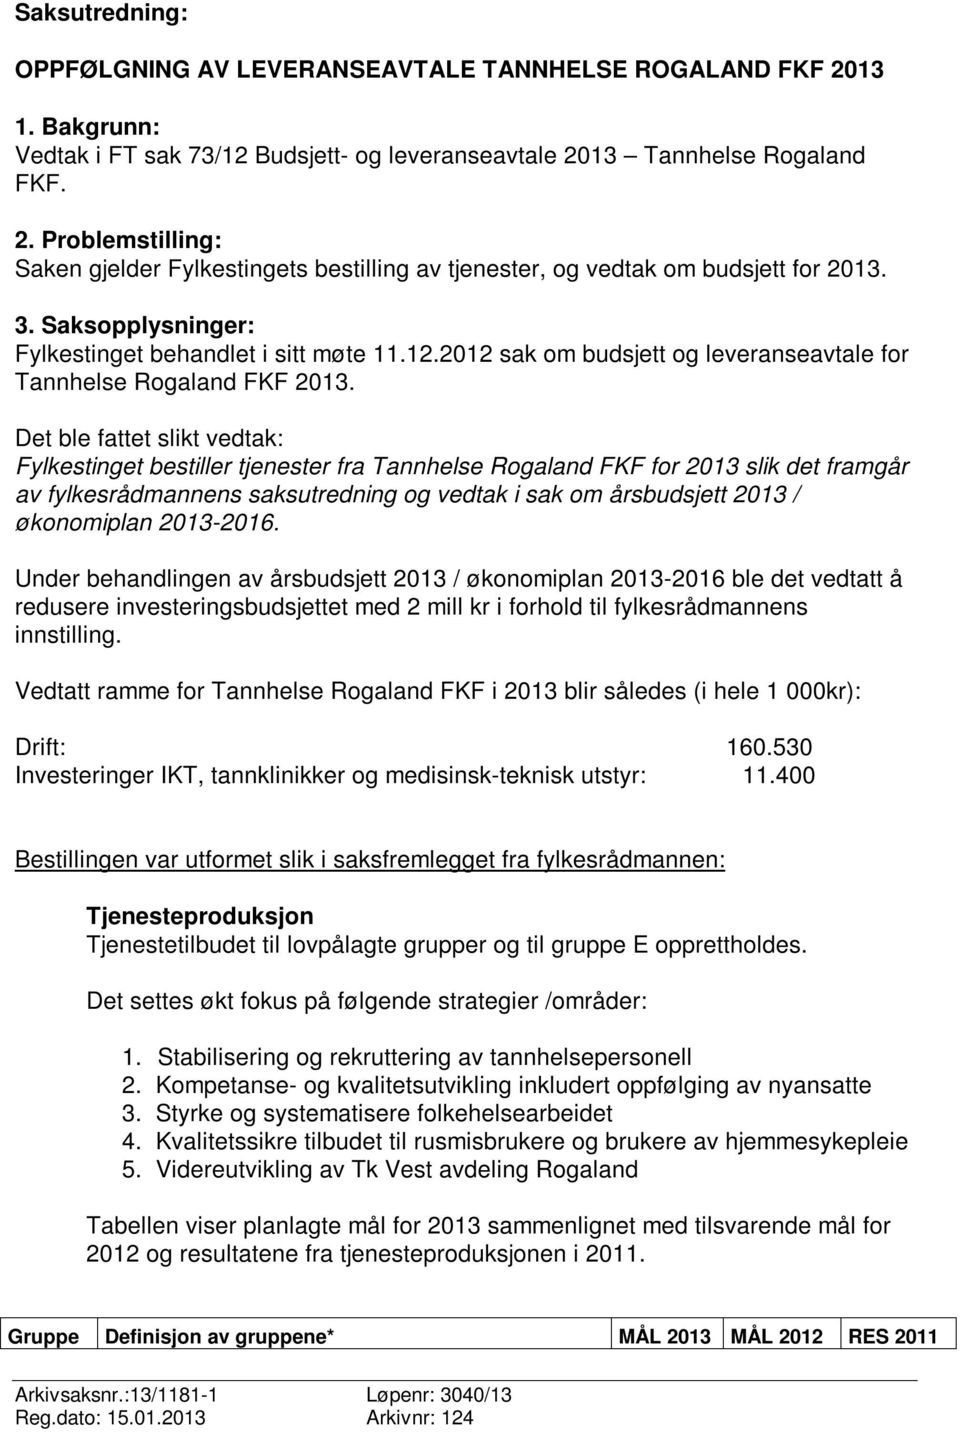 Det ble fattet slikt vedtak: Fylkestinget bestiller tjenester fra Tannhelse Rogaland FKF for 2013 slik det framgår av fylkesrådmannens saksutredning og vedtak i sak om årsbudsjett 2013 / økonomiplan